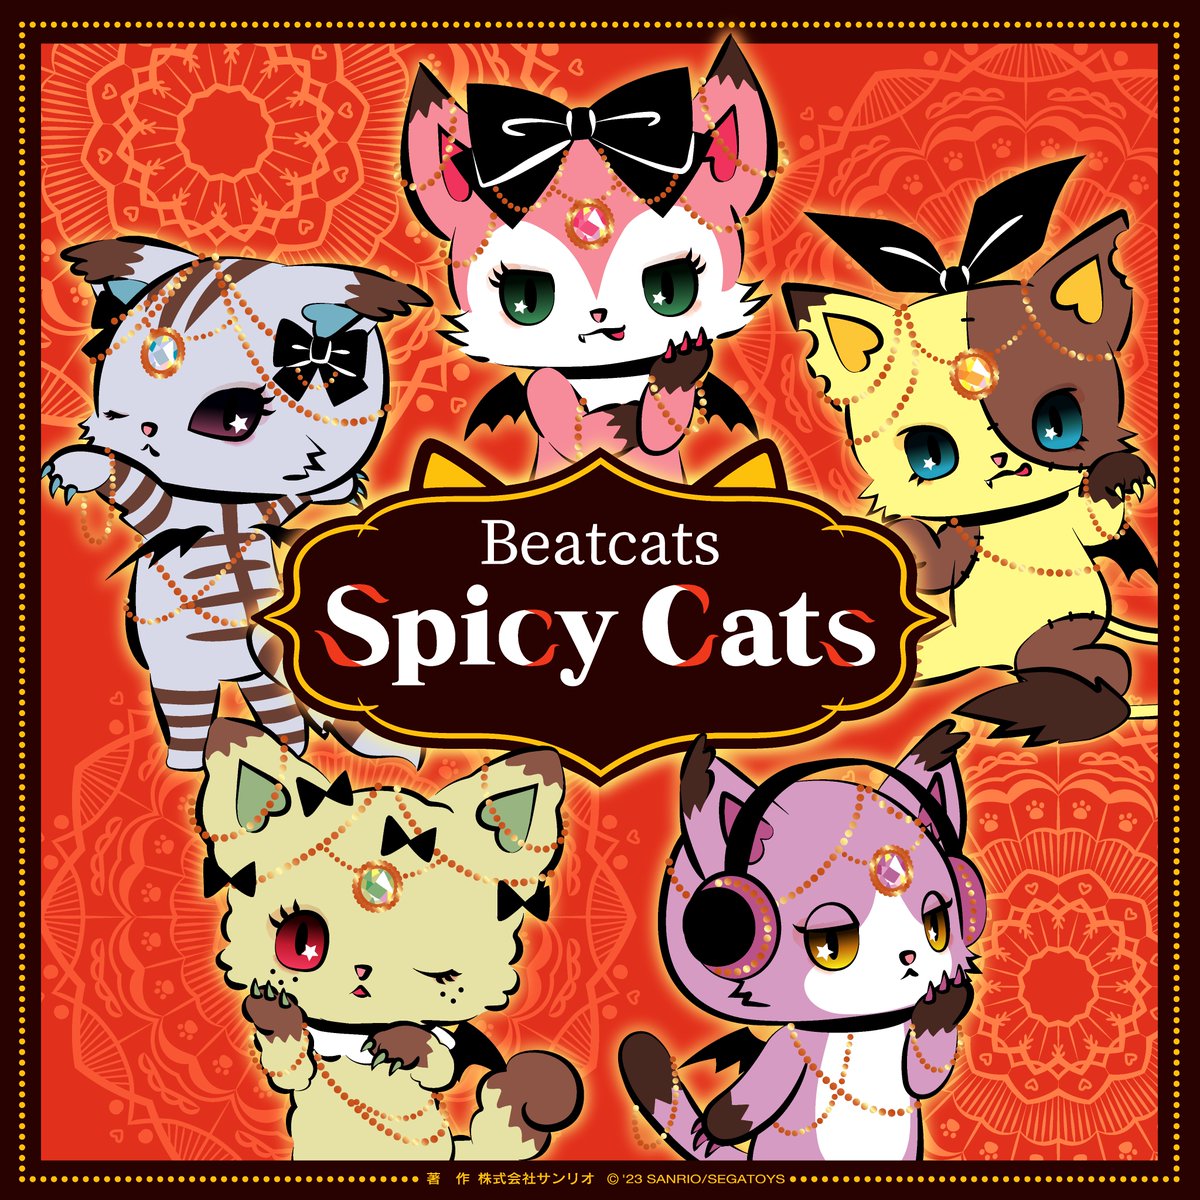 Beatcats（ビートキャッツ）の新曲「Spicy Cats」が本日より配信スタート♪ 幾多もの組み合わせで無限大の味わいや香りを表現できるスパイスの要素をBeatcatsの世界観にて曲にしました。 スパイスの如く、「Get your heartbeat!」のフレーズが世界中に渡っていきますように♪ lnk.to/SpicyCats